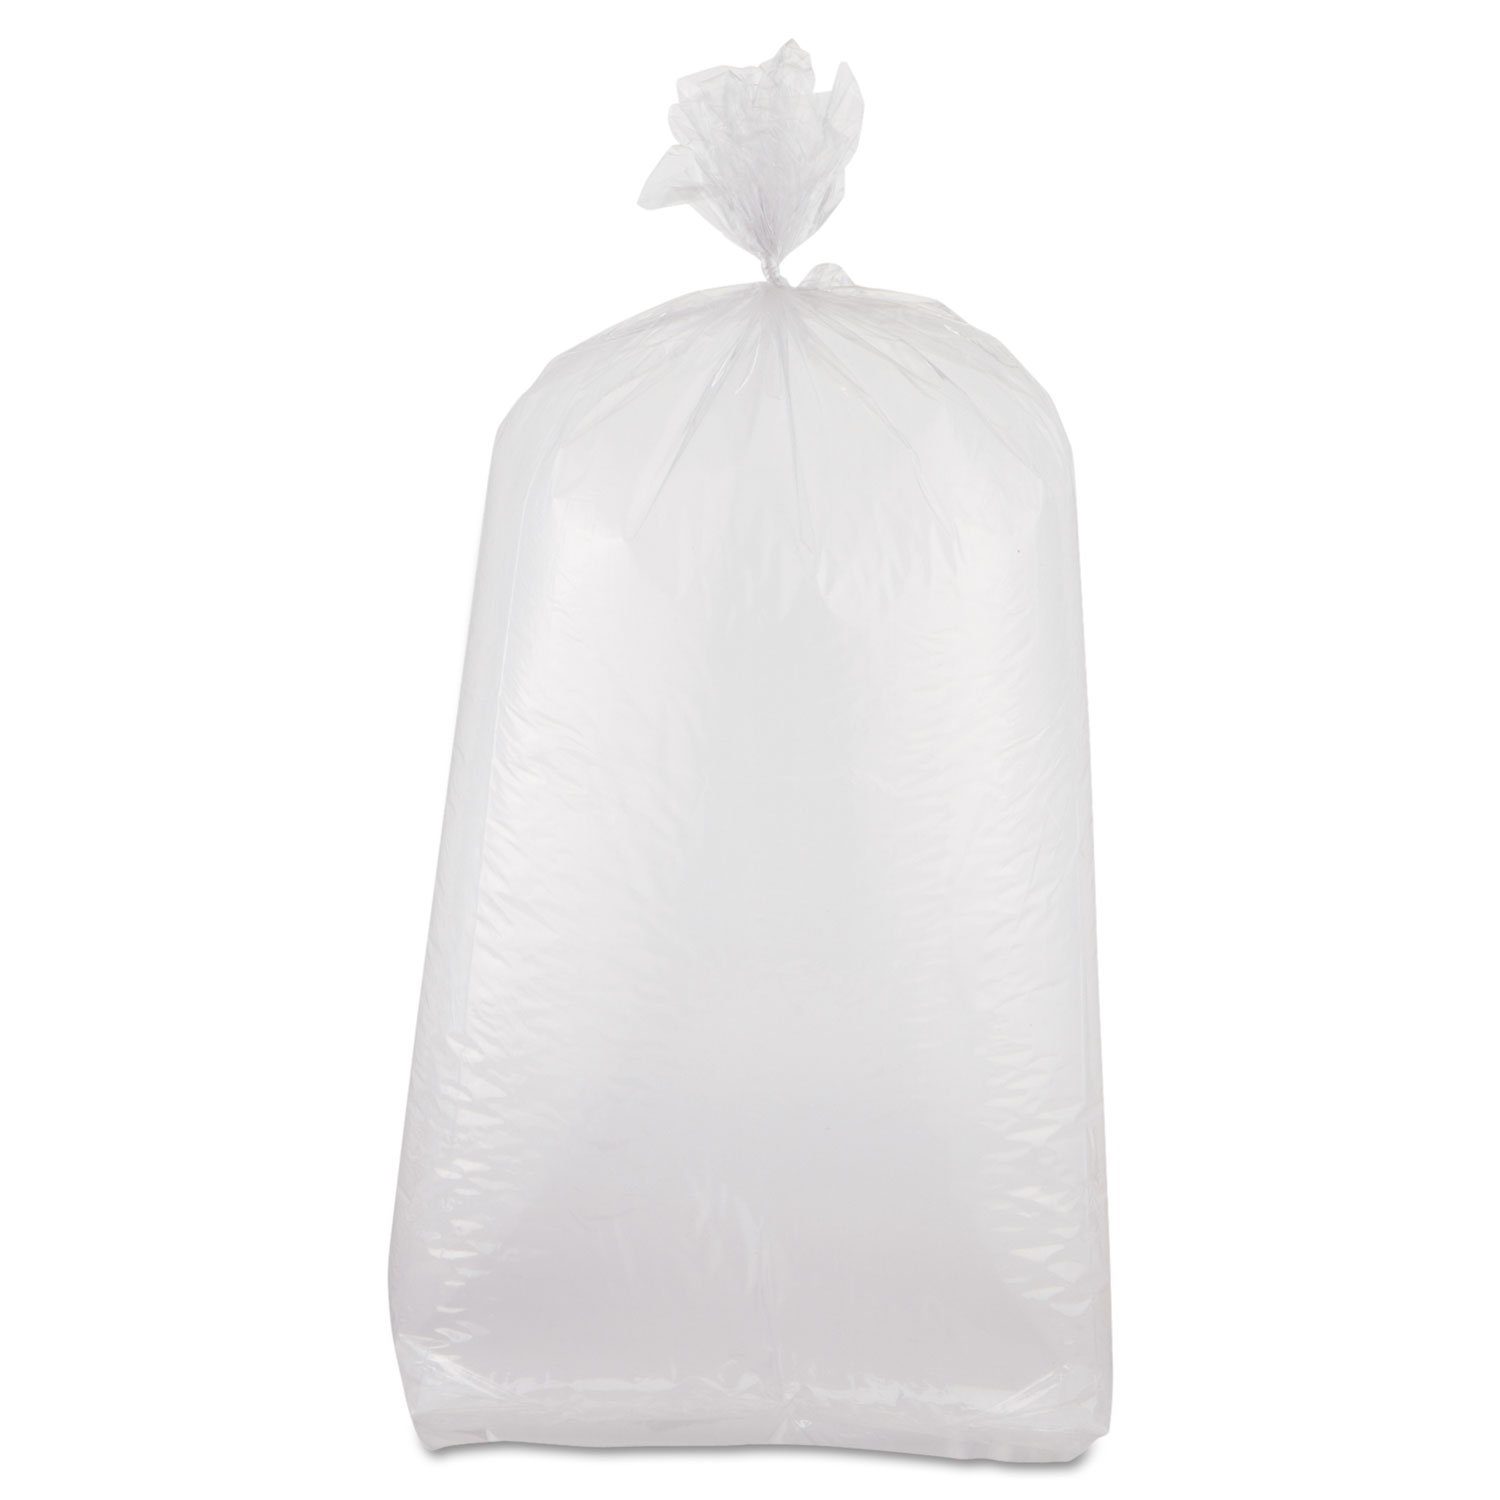  Inteplast Group PB080320M Food Bags, 0.8 mil, 8 x 20, Clear, 1,000/Carton (IBSPB080320M) 